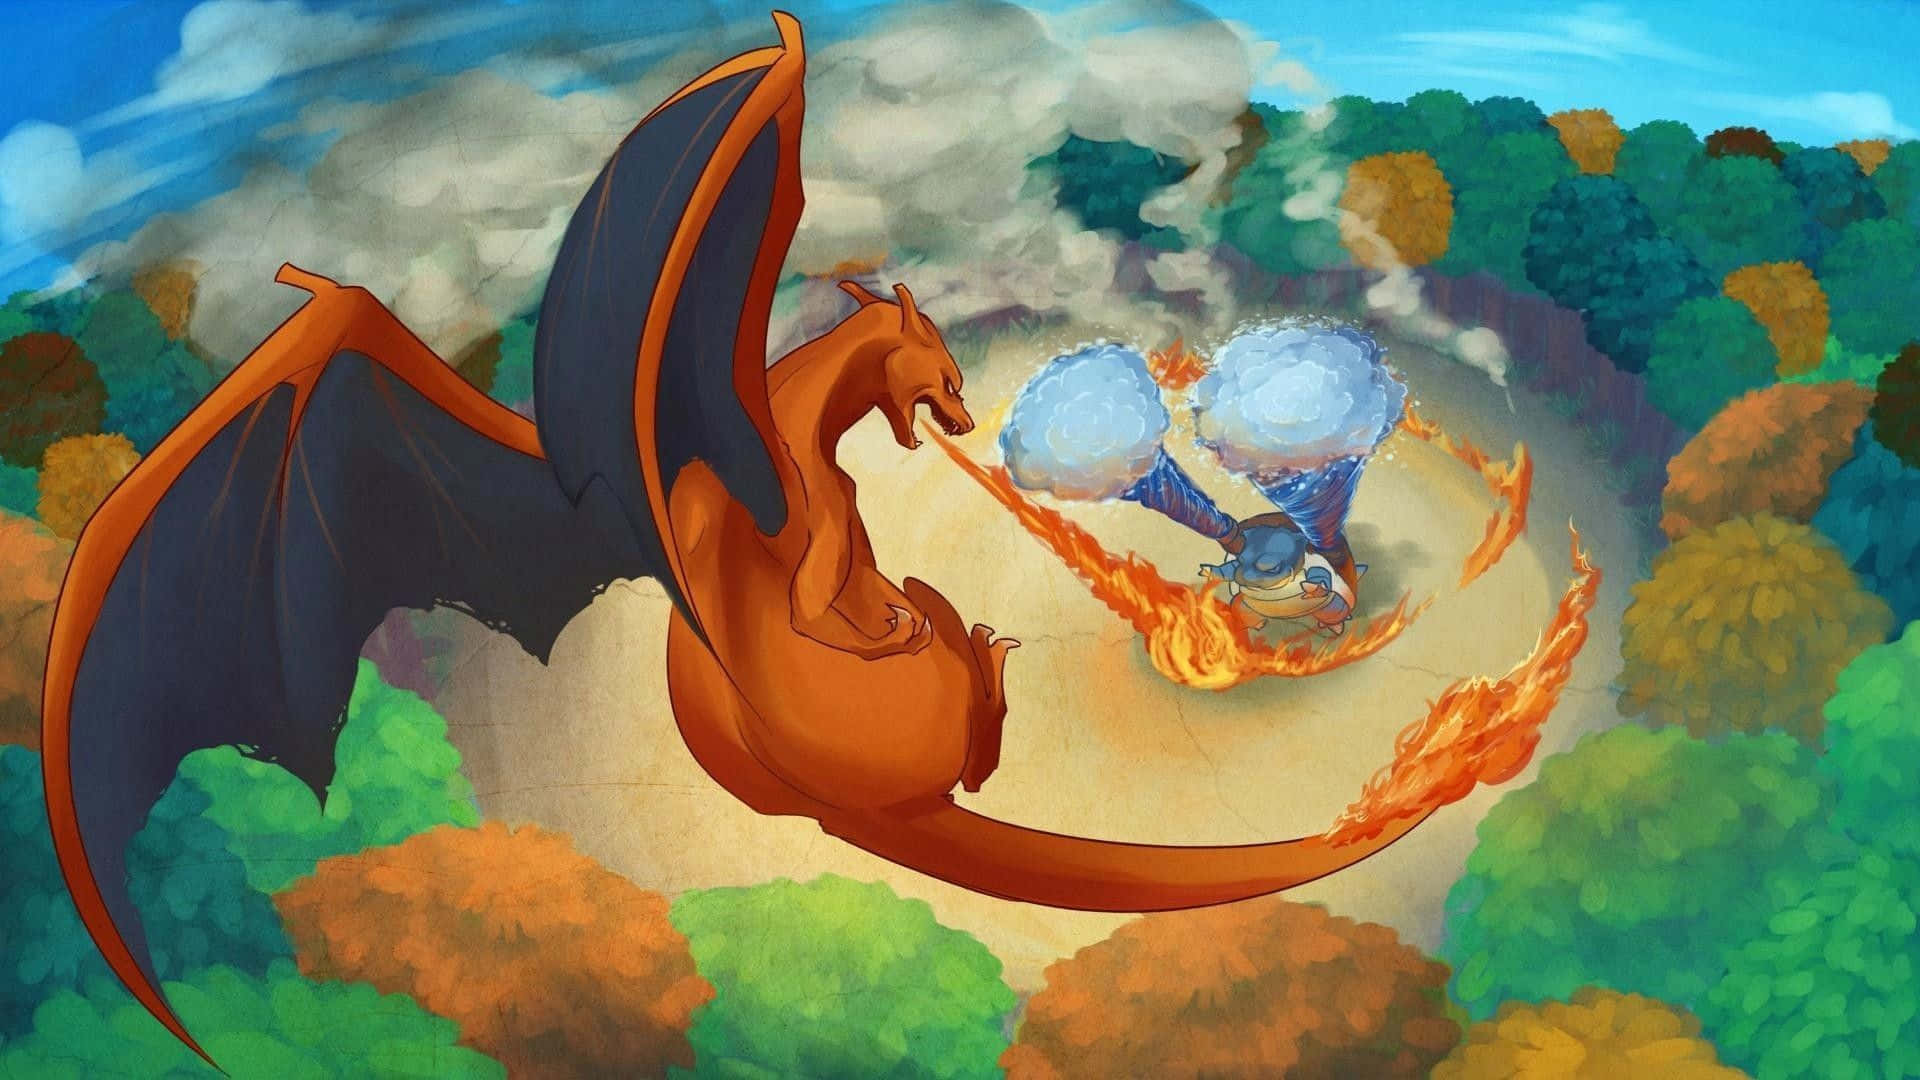 Fondode Pantalla De La Batalla Entre Charizard Y Blastoise De Pokémon.